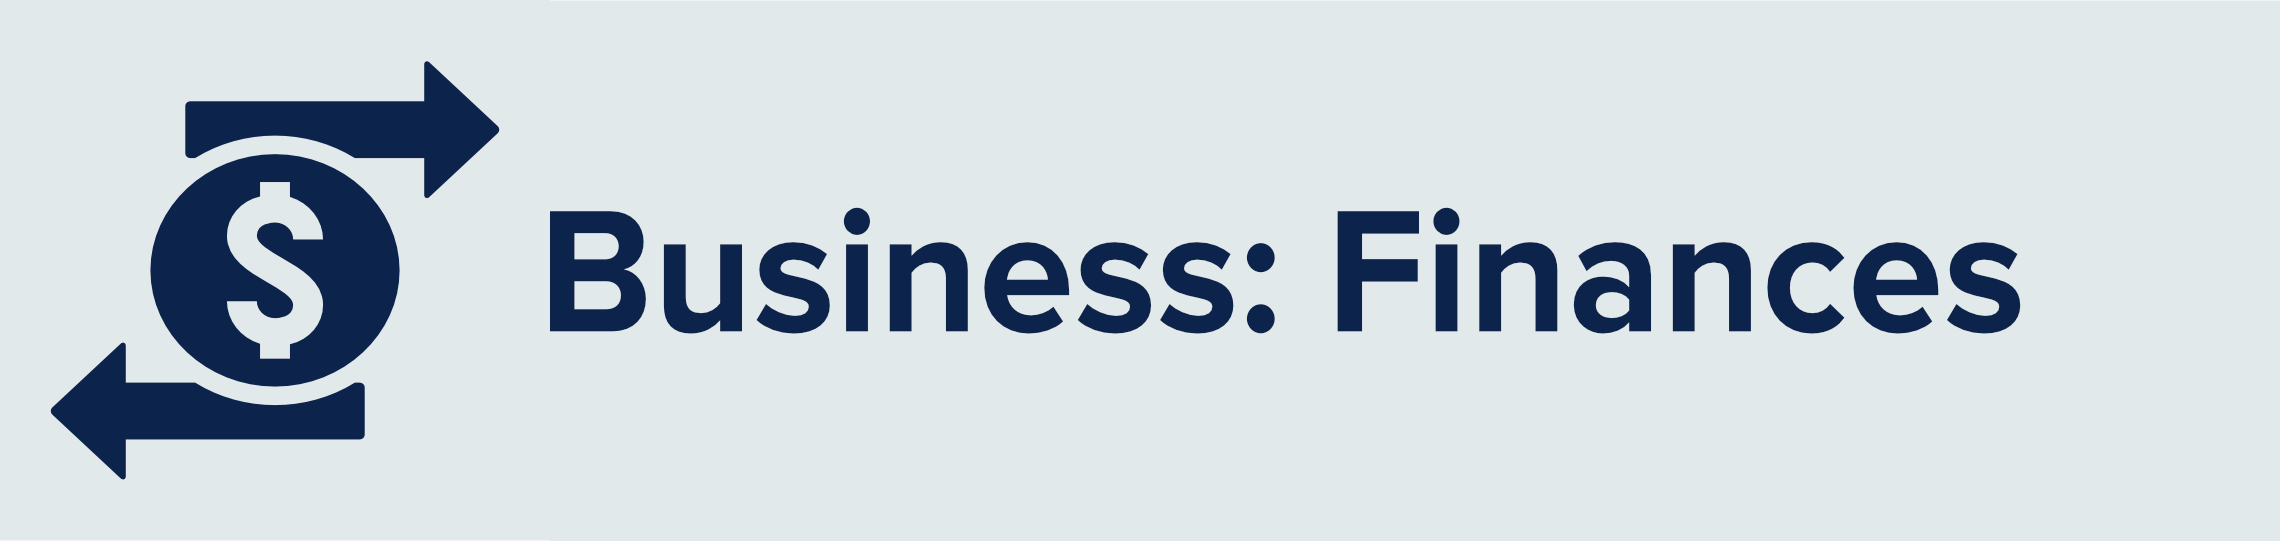 Business Mission - Finances